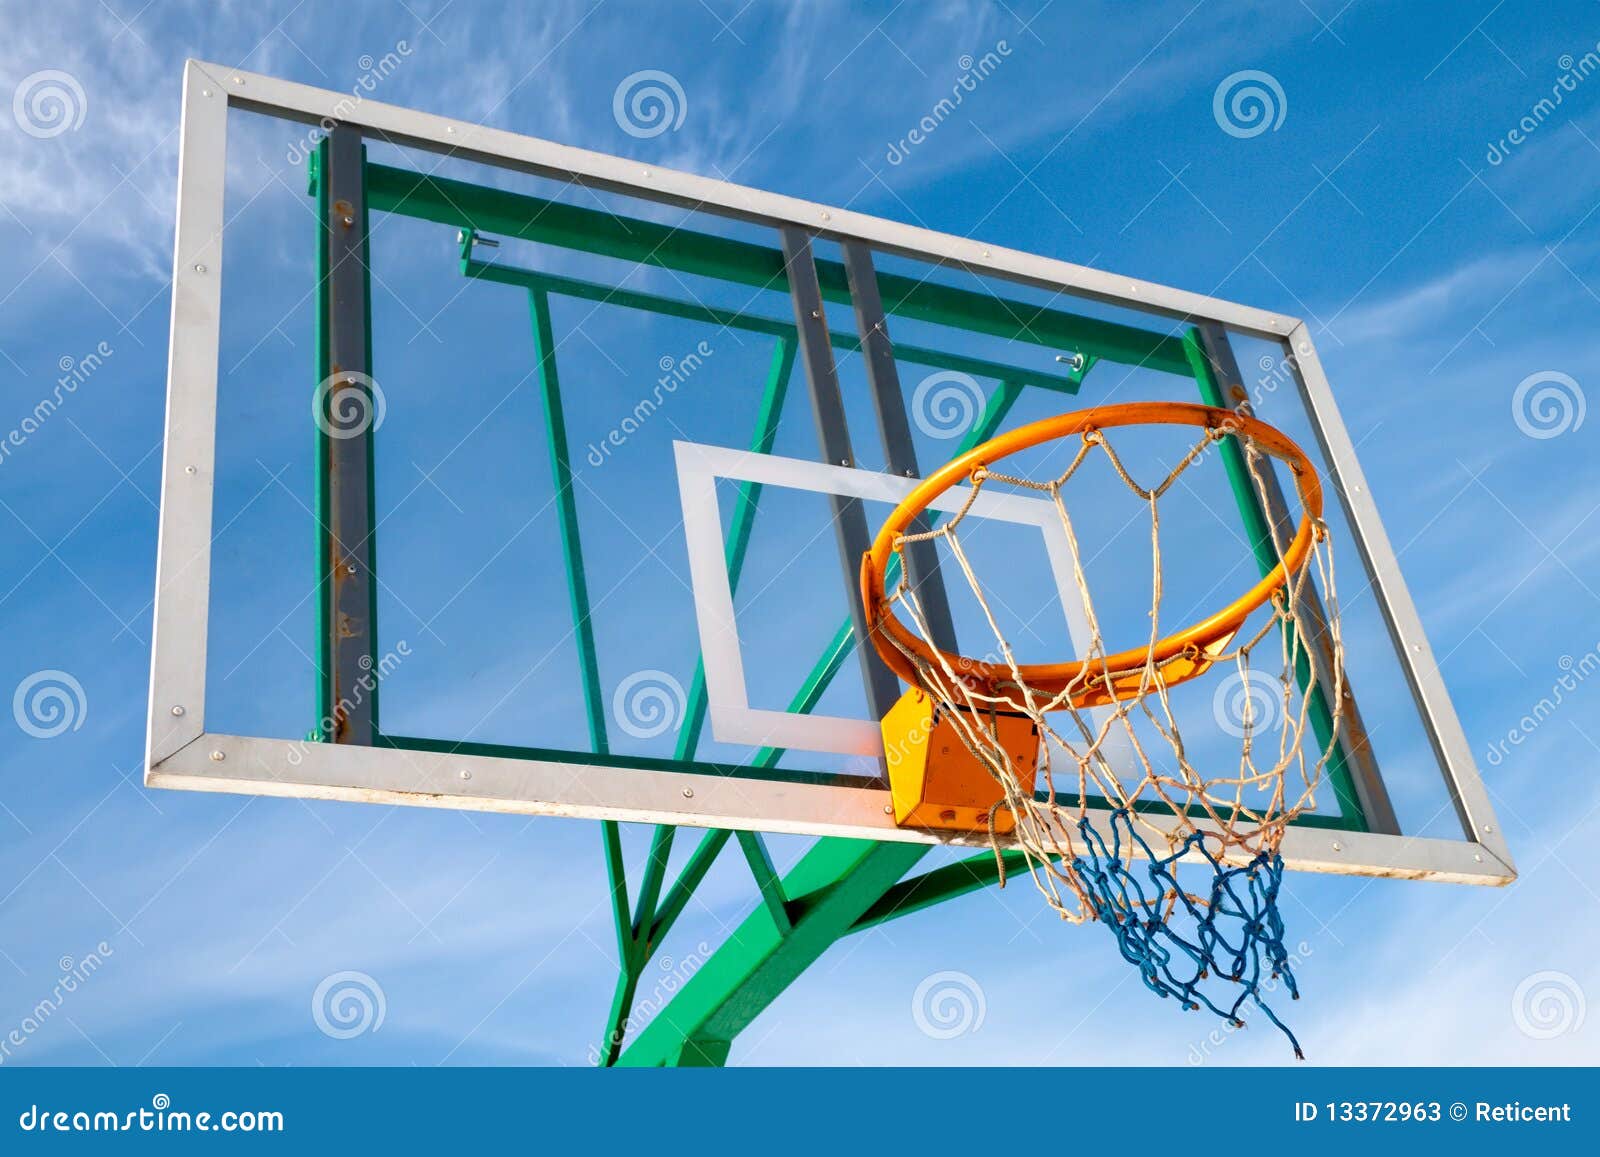 Basketball Transparent Stock Illustrations – 1,547 Basketball Transparent  Stock Illustrations, Vectors & Clipart - Dreamstime